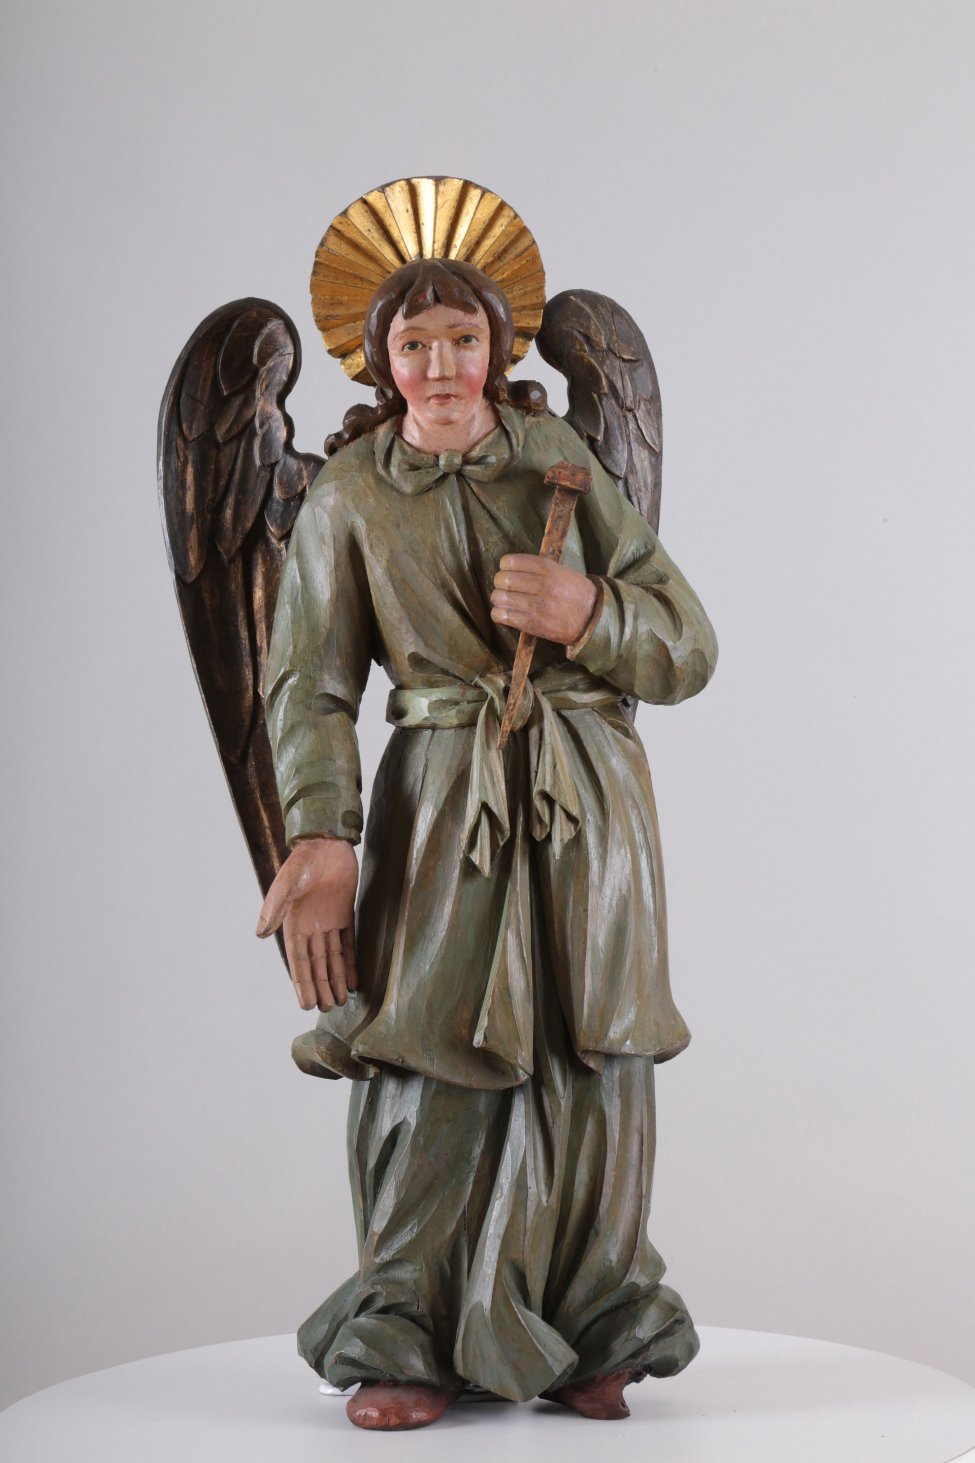 У ангела одежда сине-зеленого цвета. Сзади находится два отдельно вырезанных позолоченных крыла. Правая рука опущена, а левая - поднята.